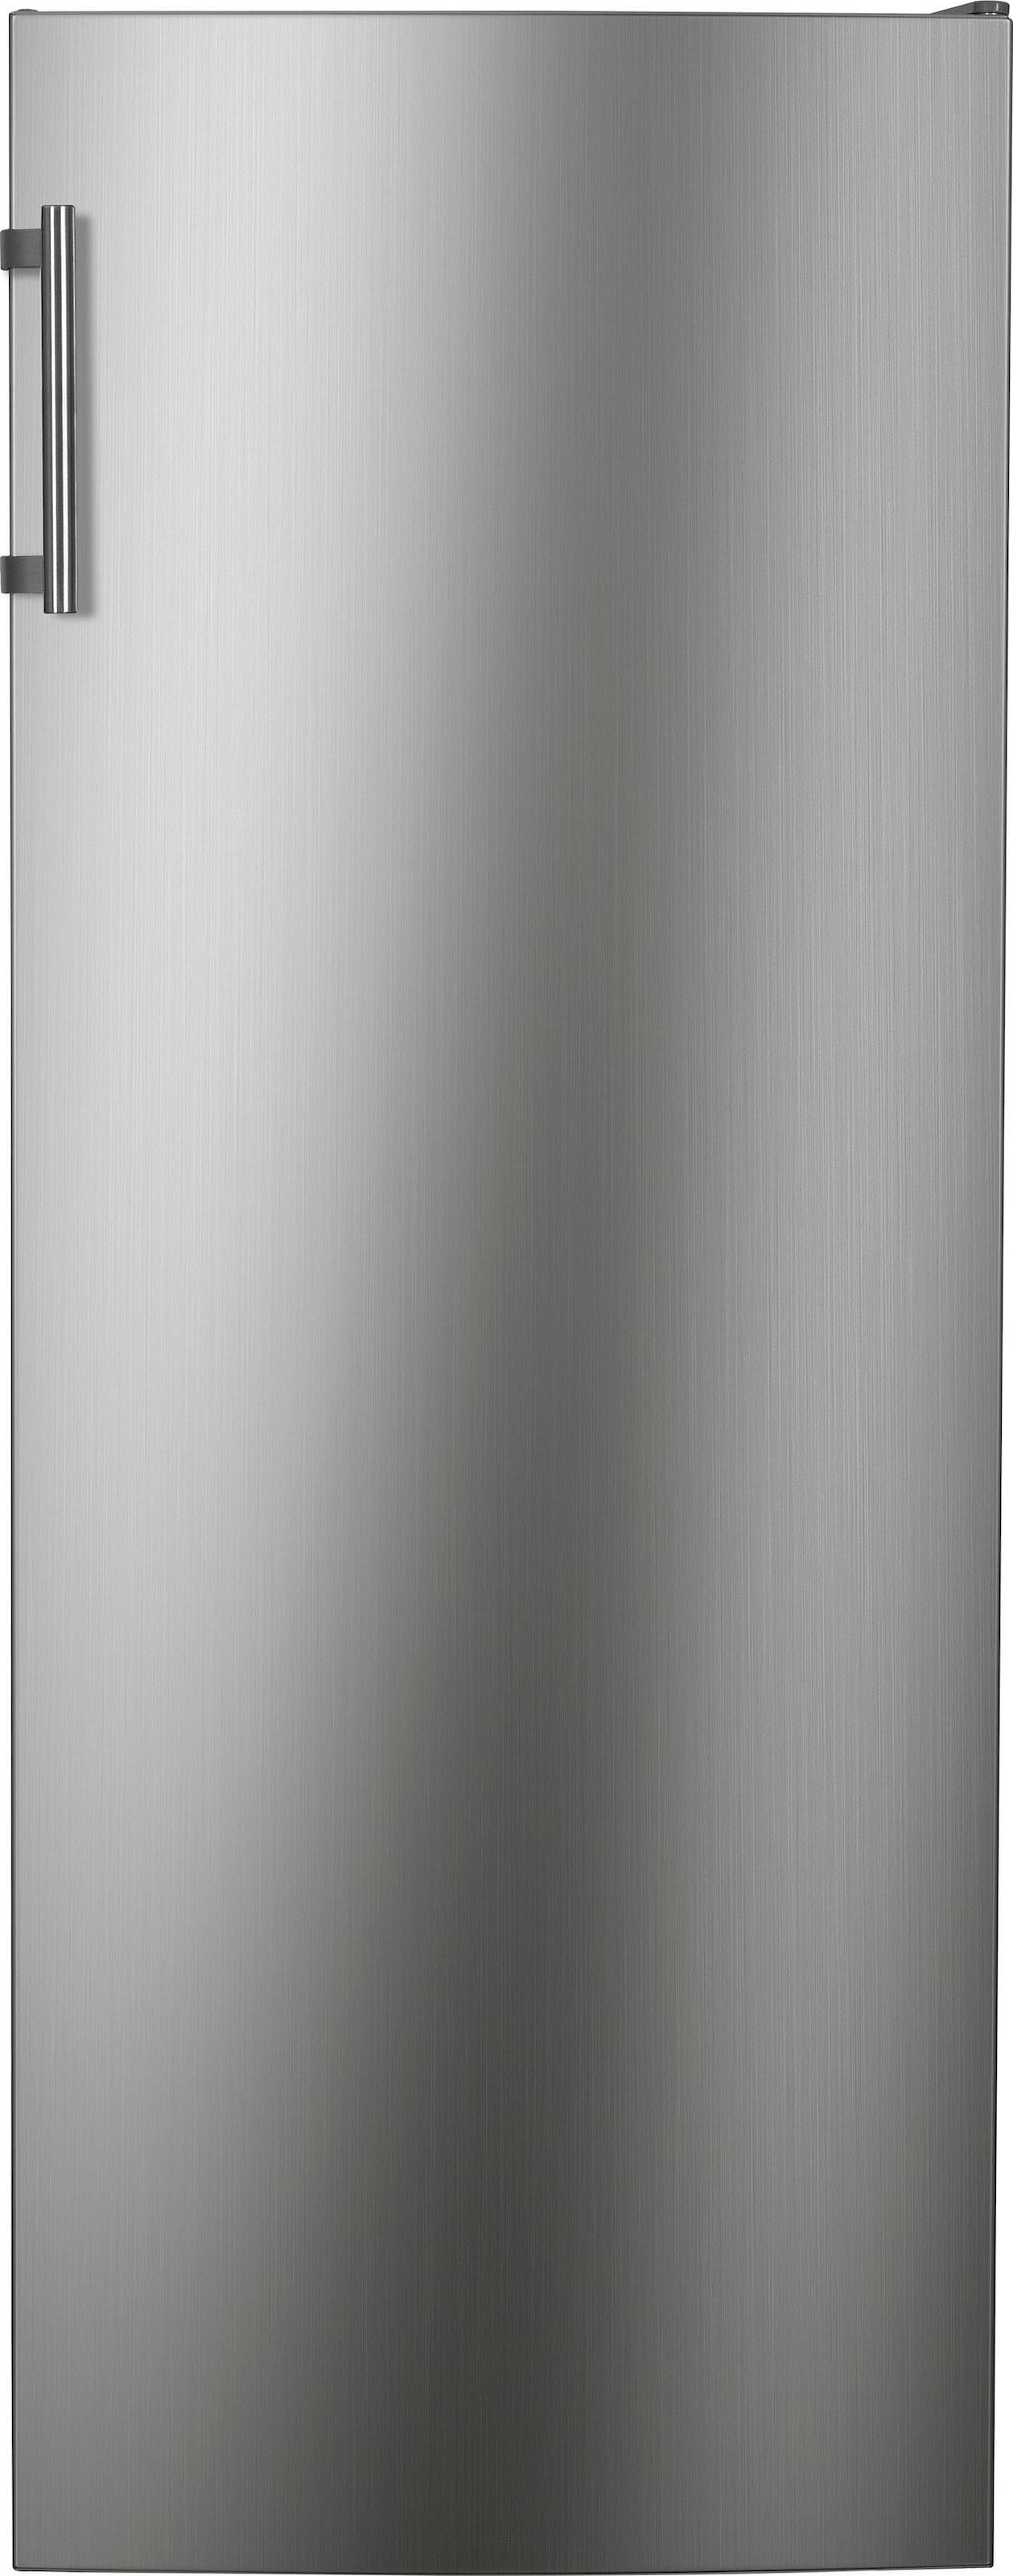 Gefrierschrank, 143 cm hoch, 54 cm breit, NoFrost, Schnellgefrierfunktion, Türalarm